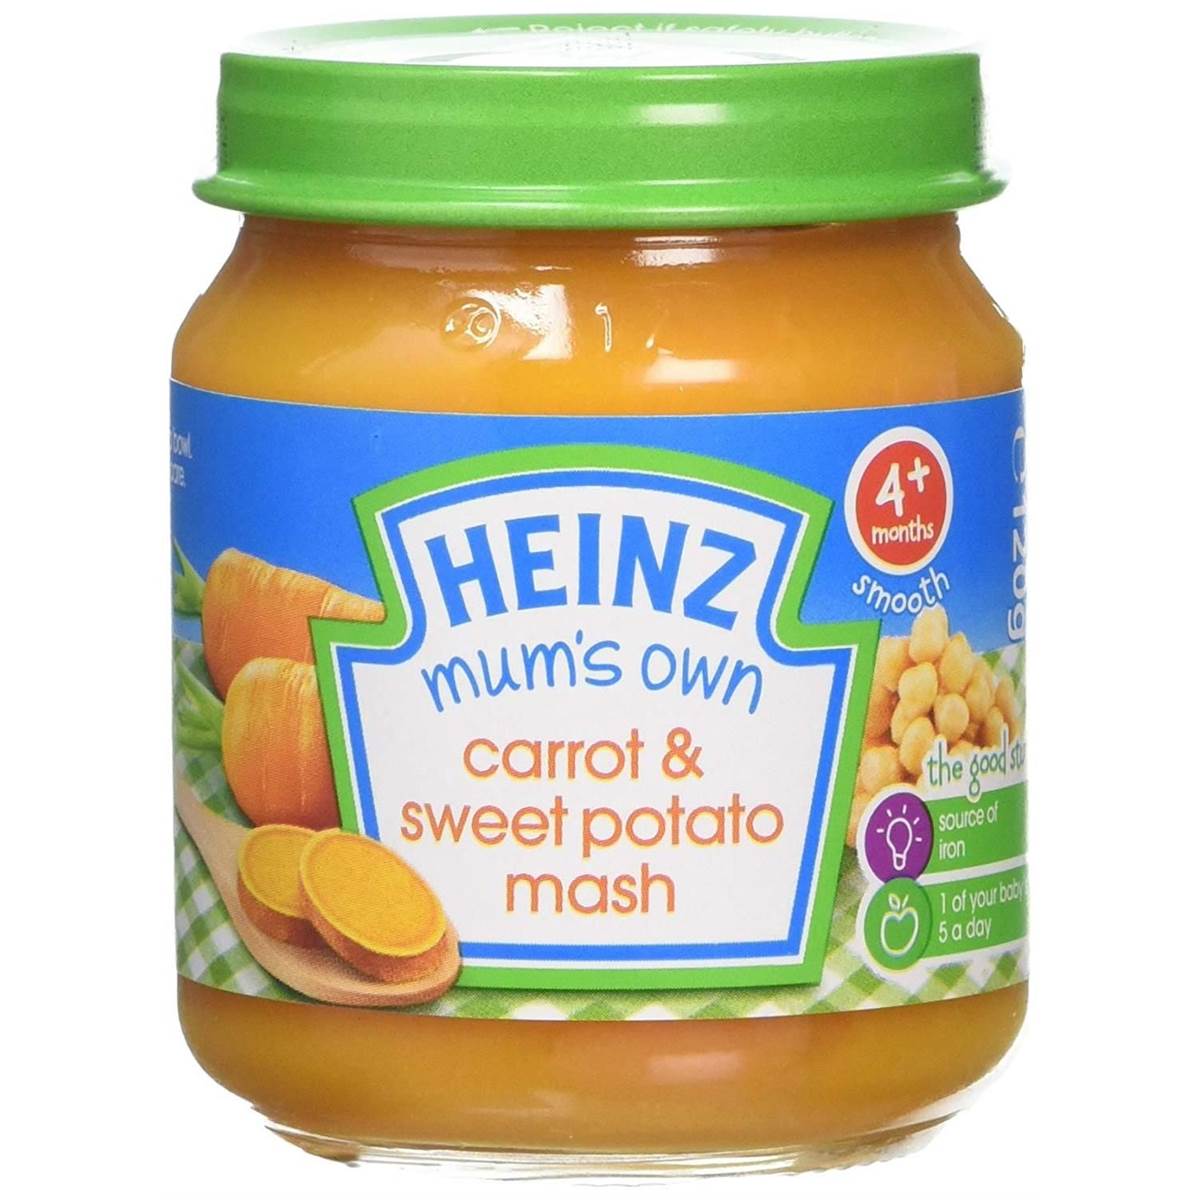 Heinz Mums Own Carrot & Sweet Potato Mash - 120g